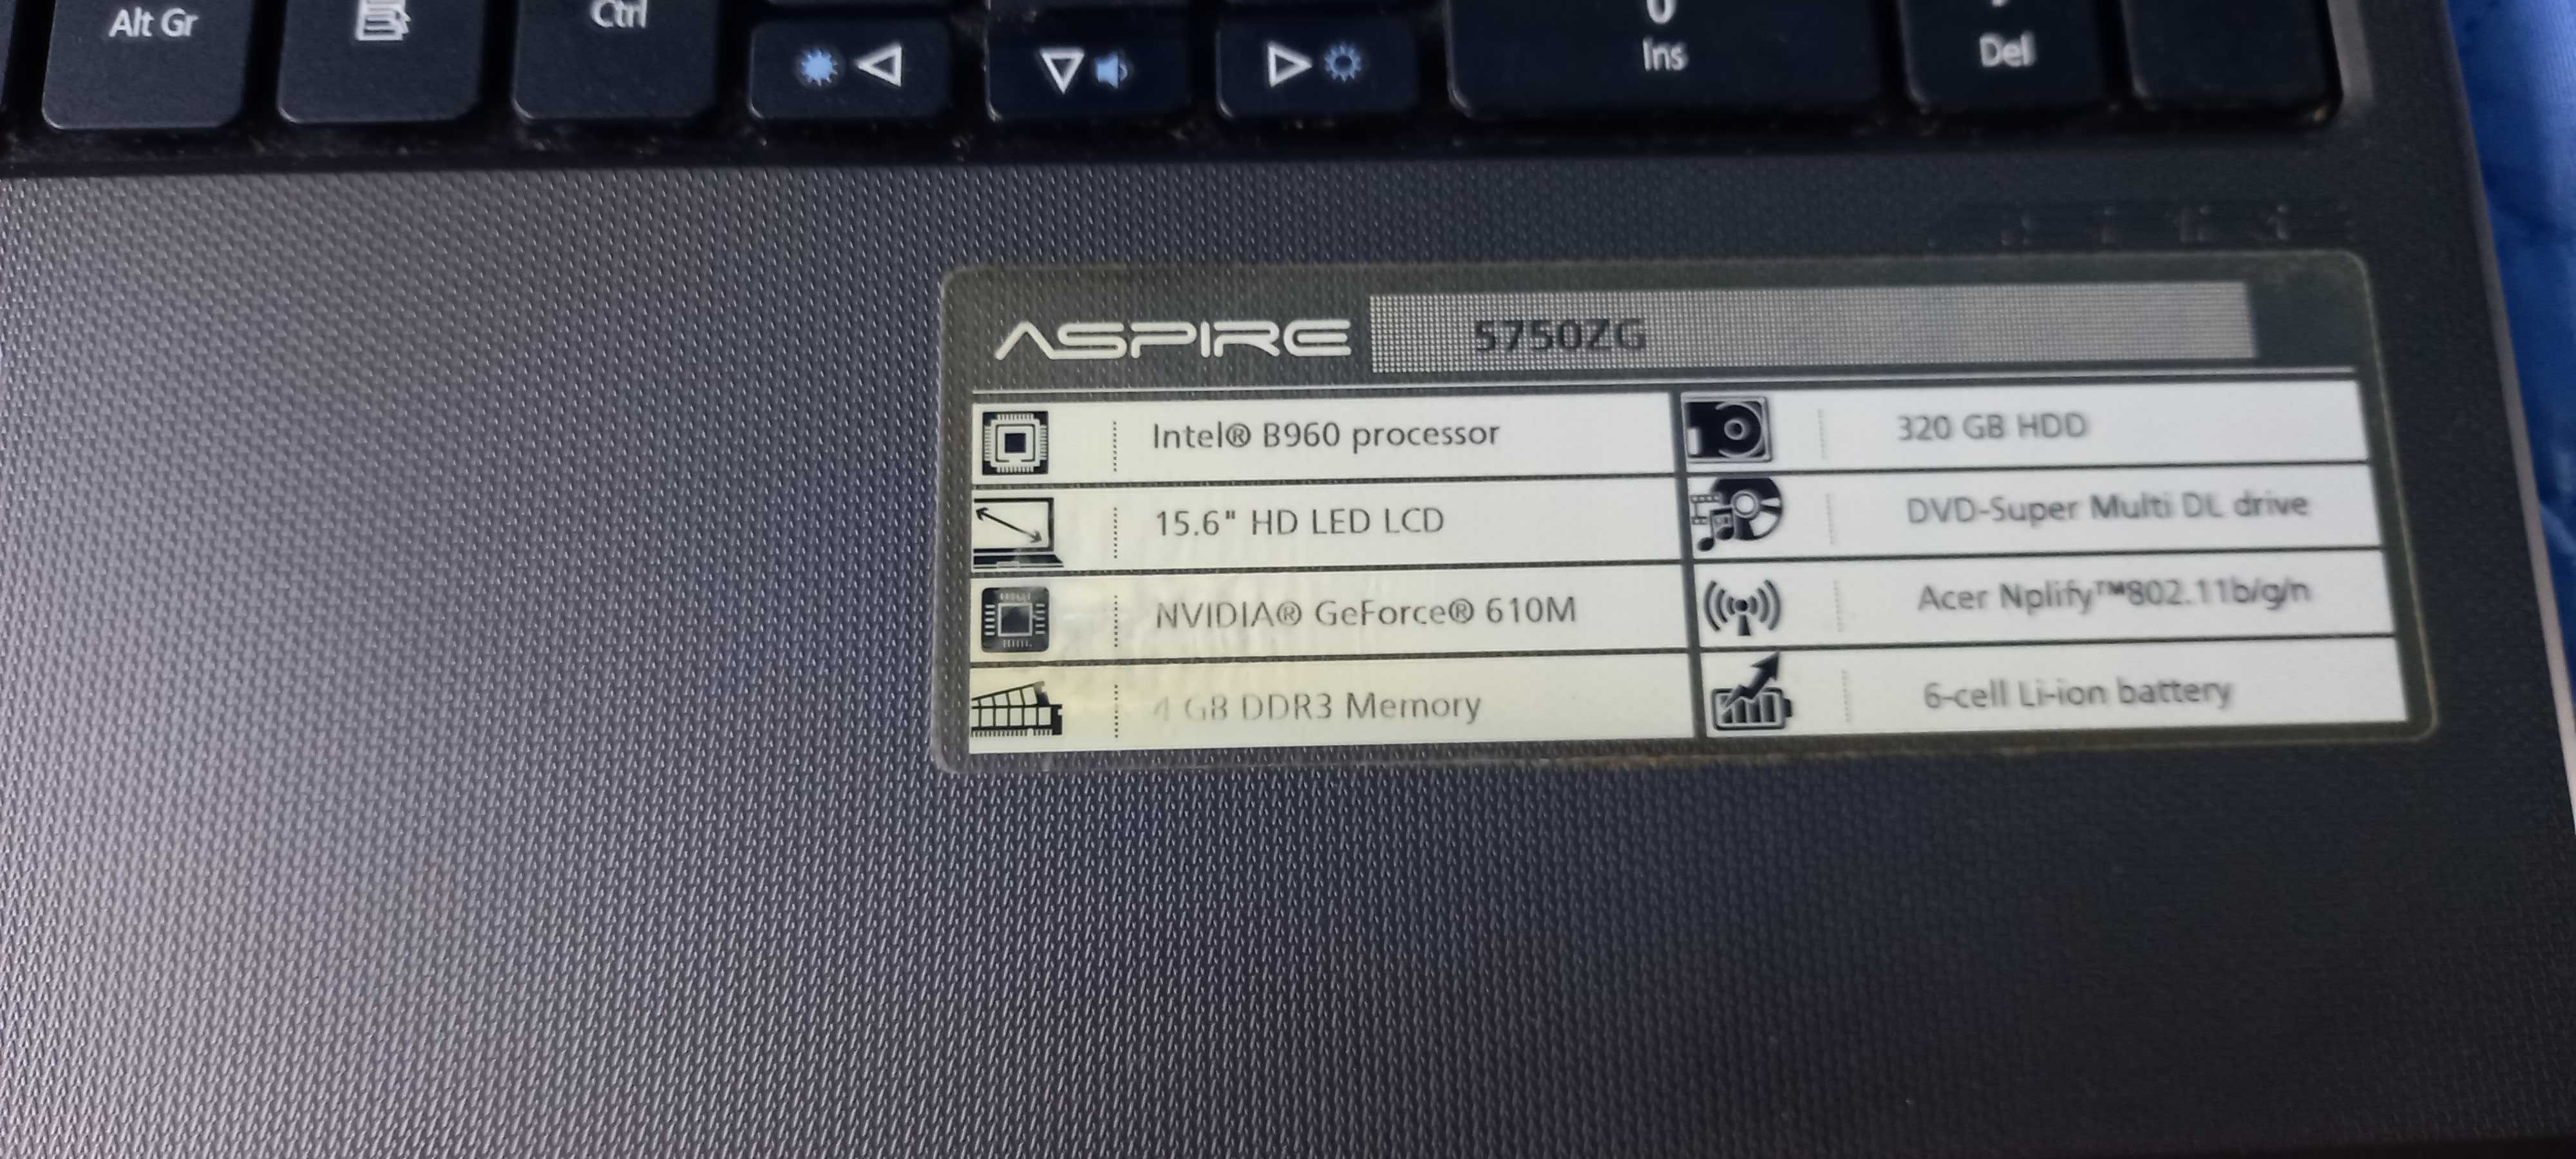 Laptop Acer 5750zg.  Pret fix!